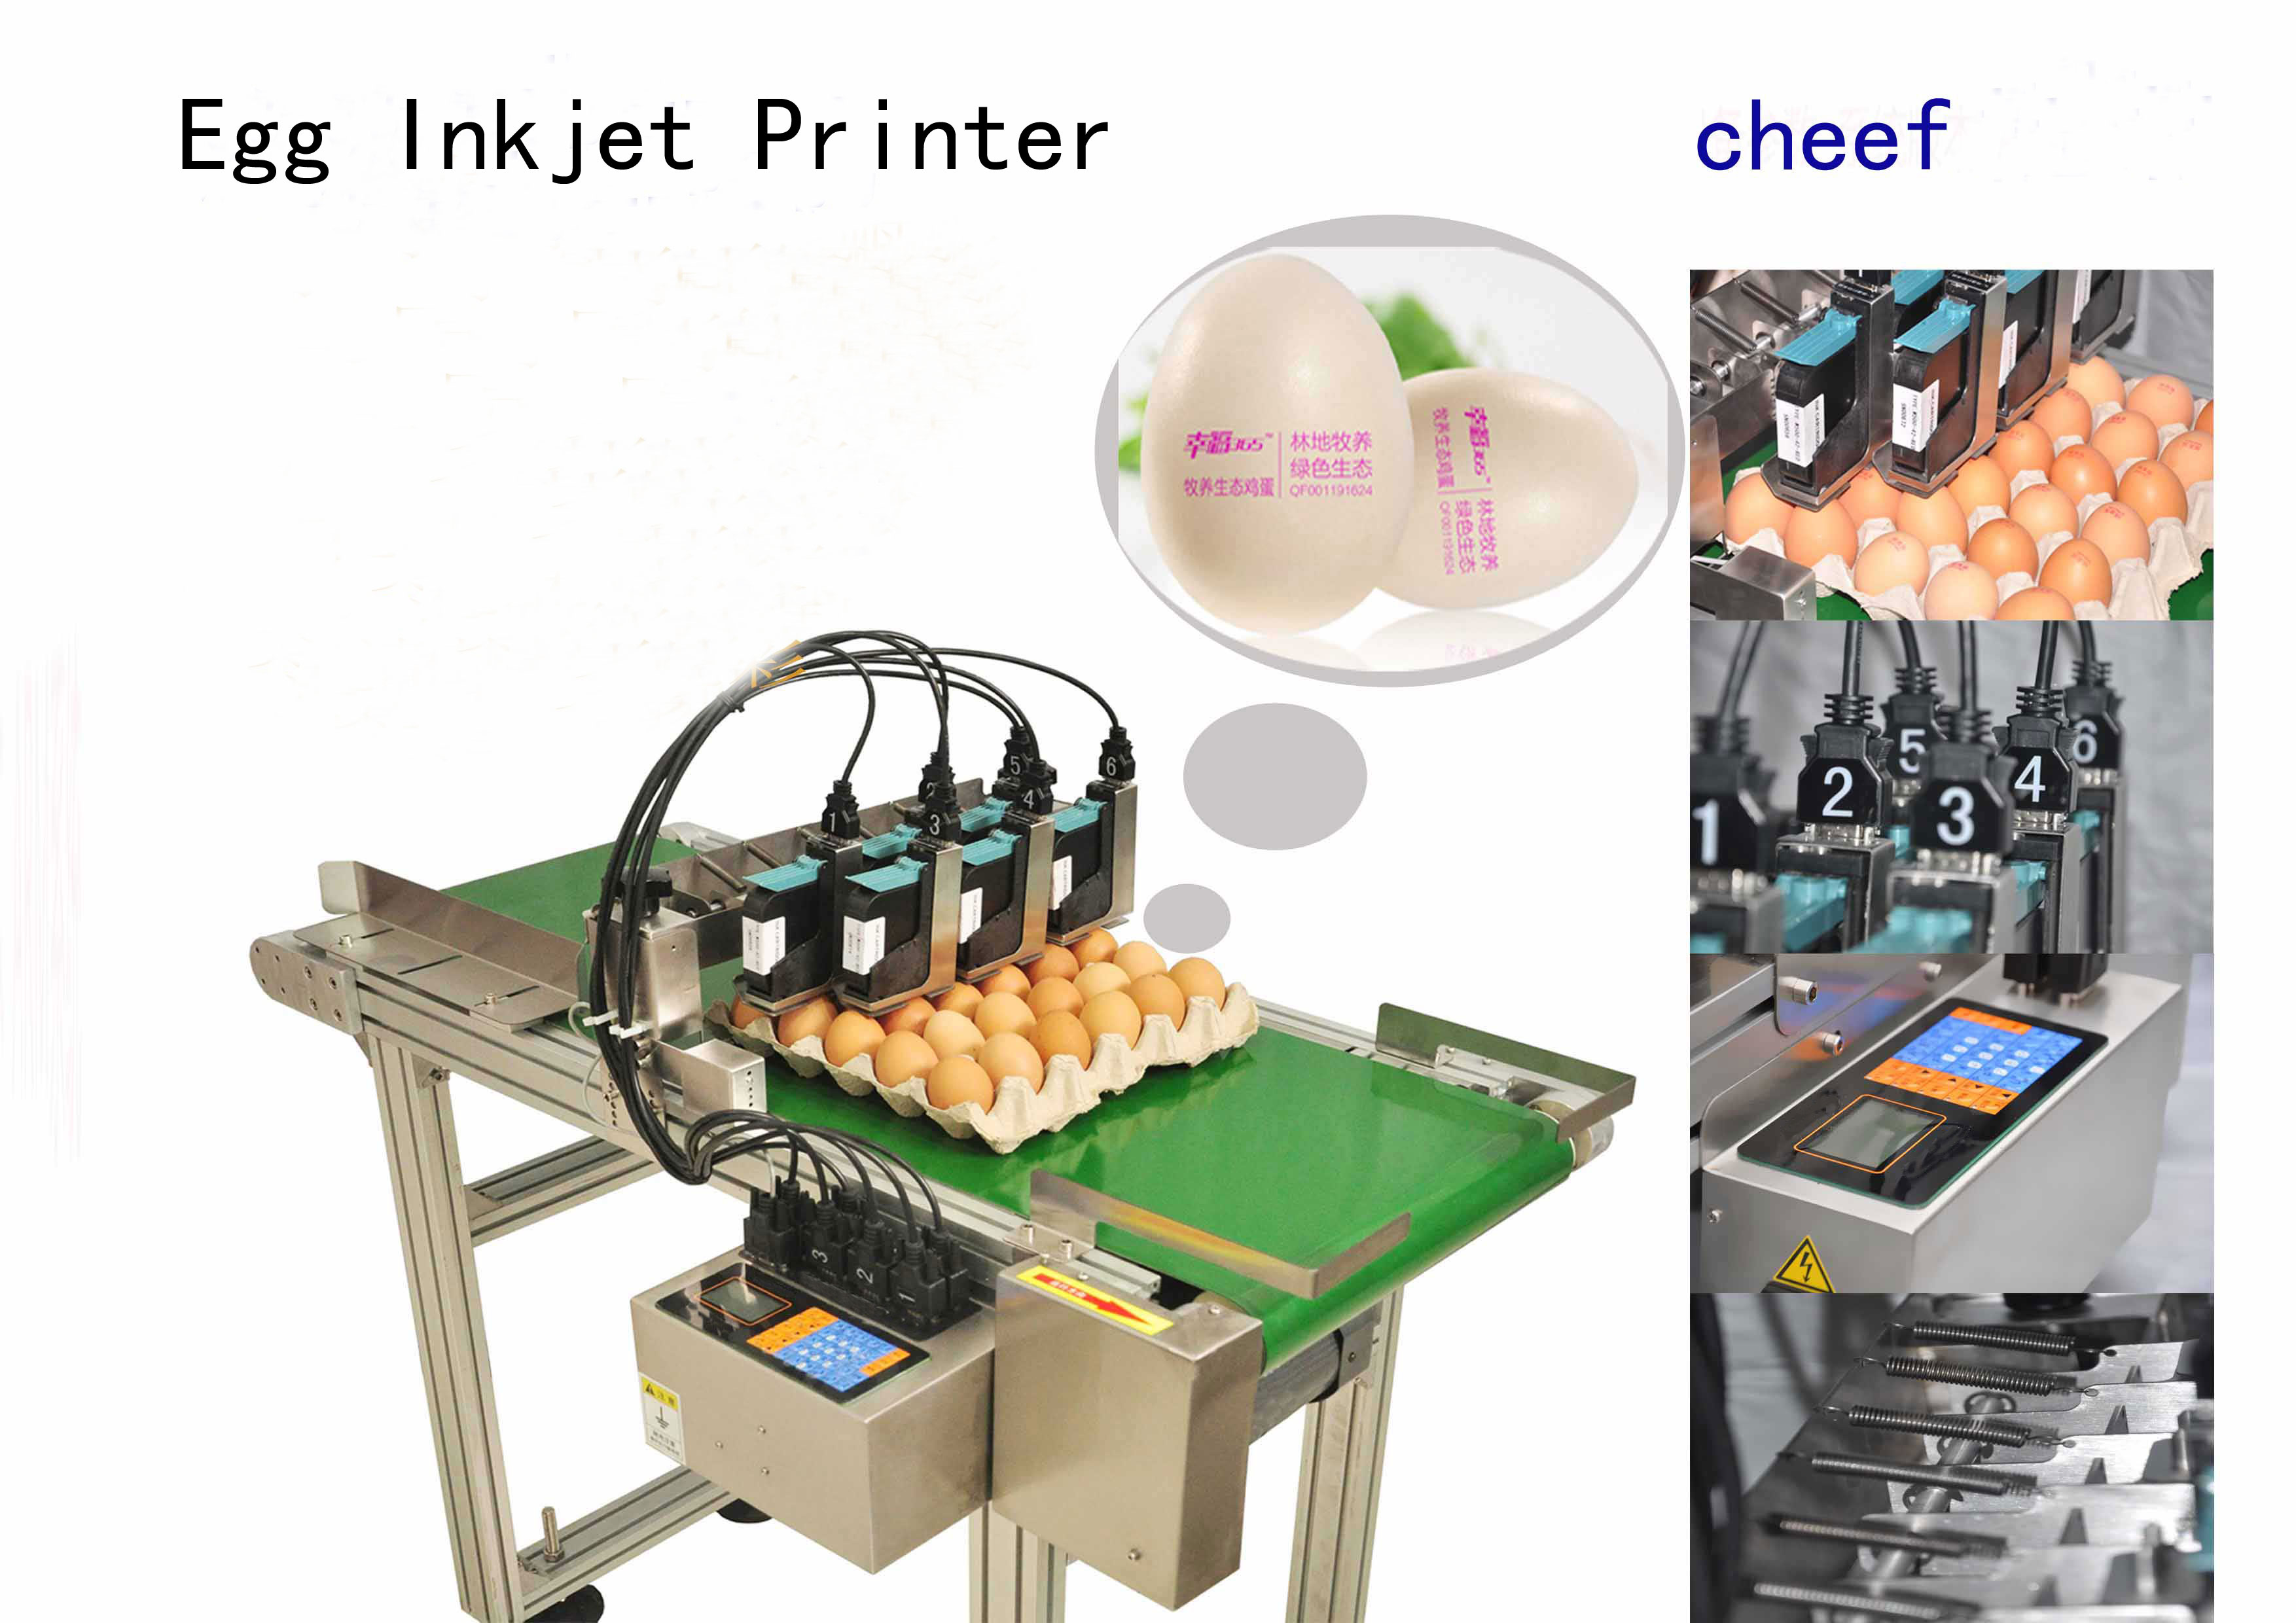 avanzada máquina de impresión tij de alta estabilidad barata con impresión de lotes de cartuchos de tinta comestibles en huevos